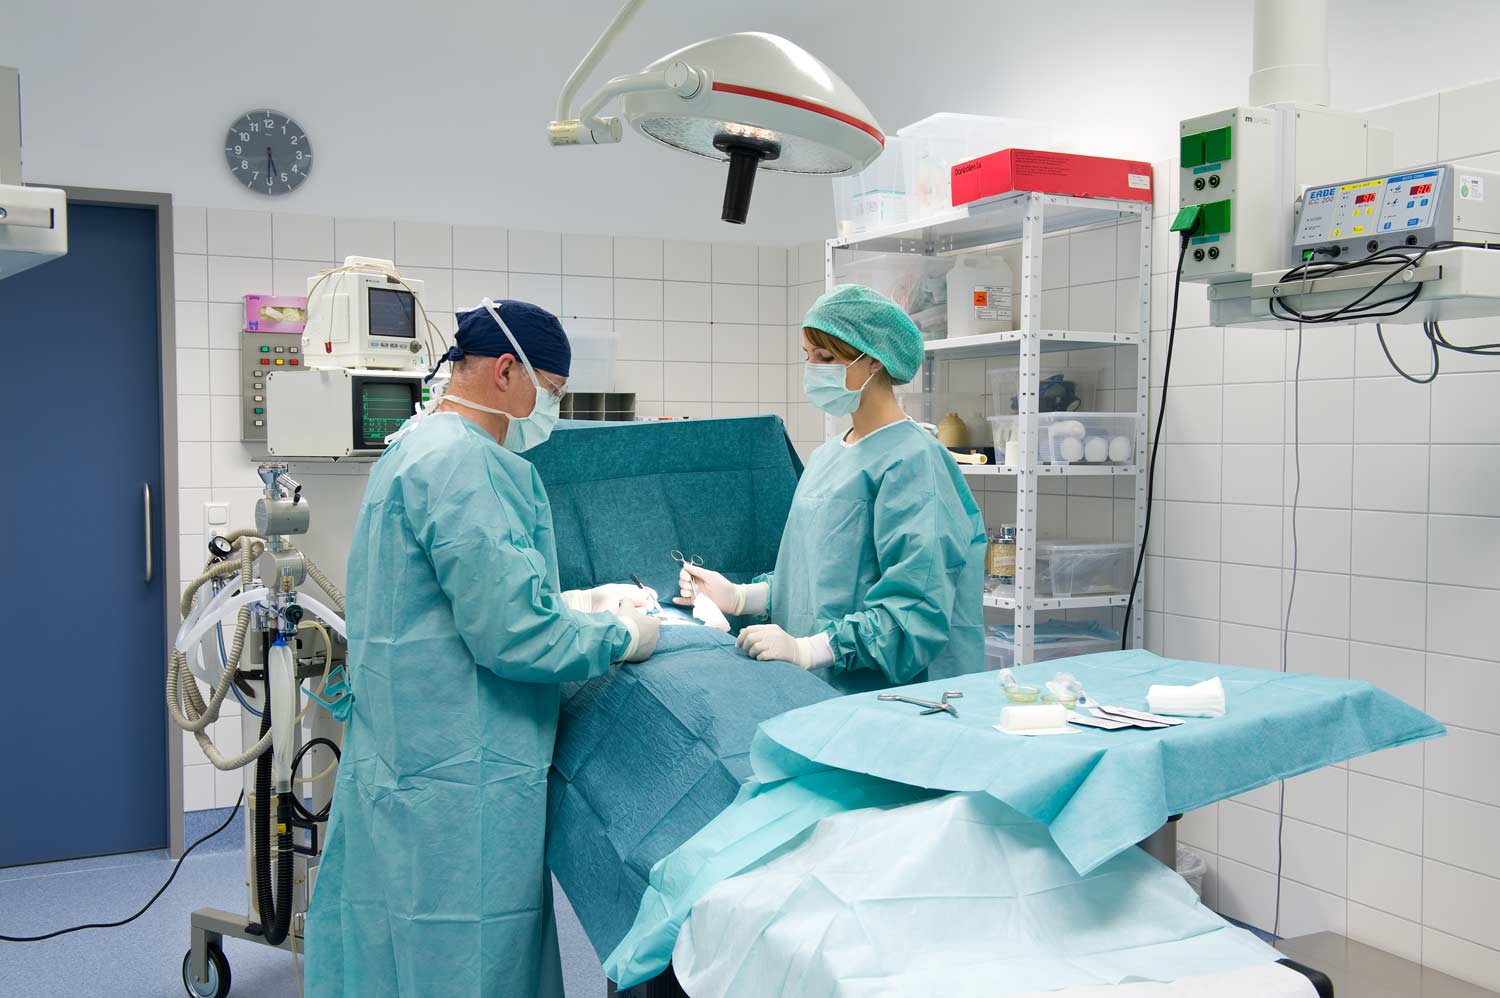 Bauchchirugie - Chirugisches Centrum Dr. Withöft Neutraubling